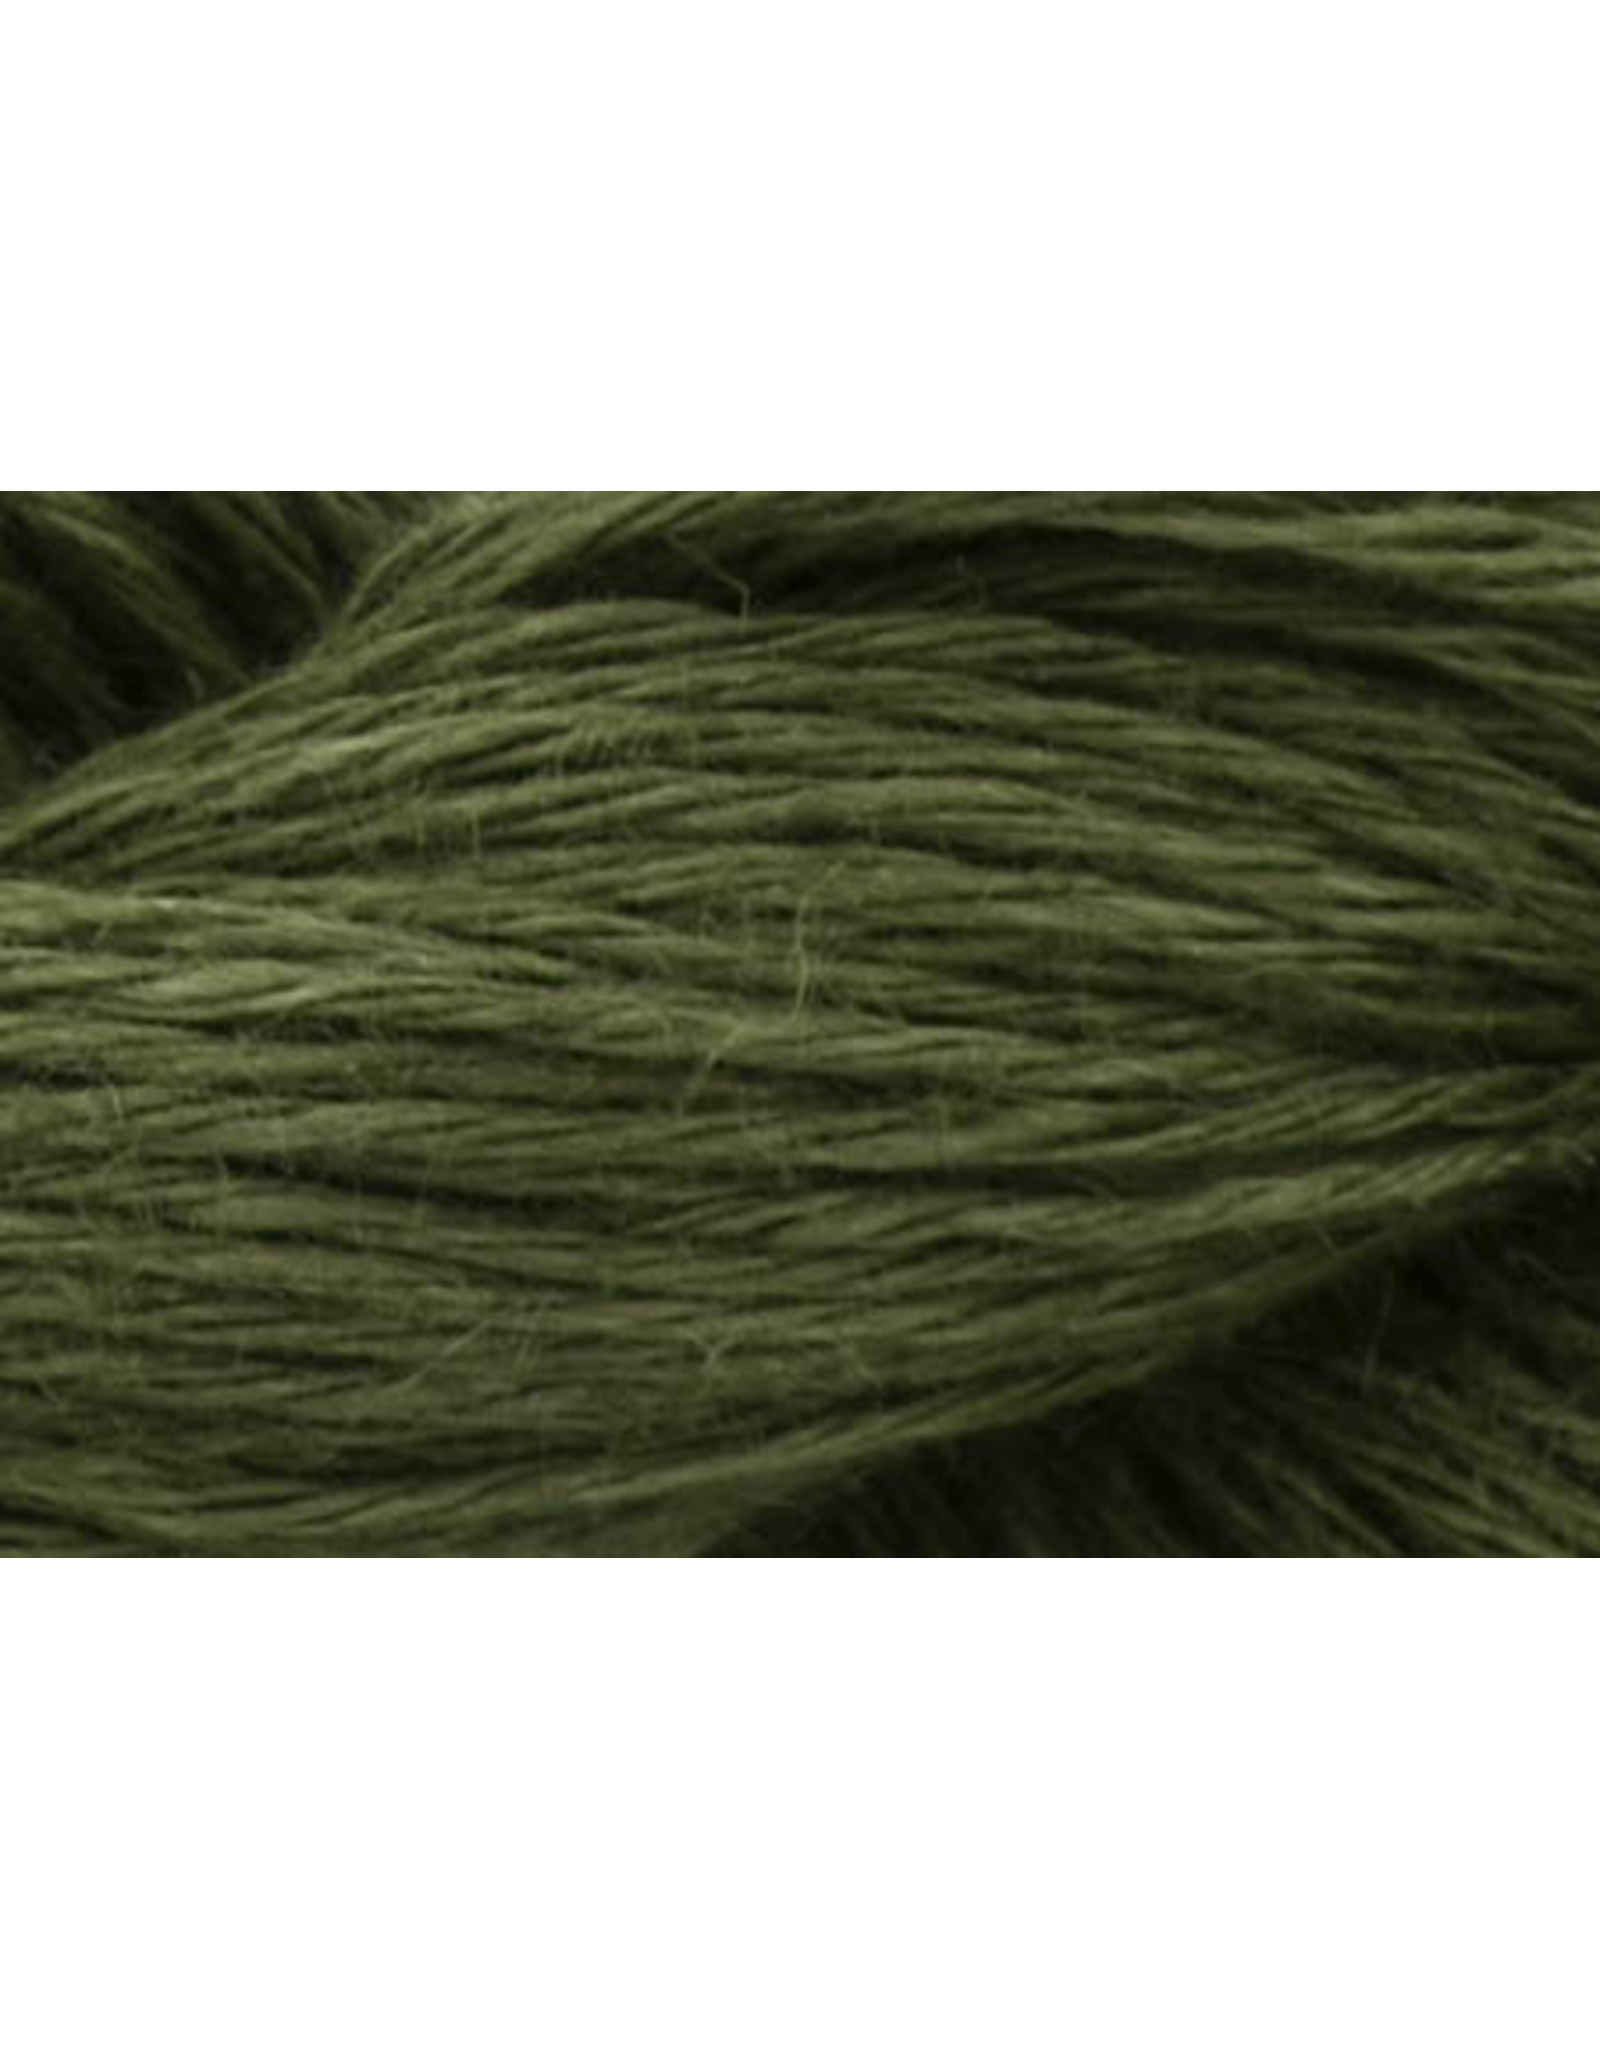 Universal Yarns Universal Yarn: Flax Lace (111 - 119),